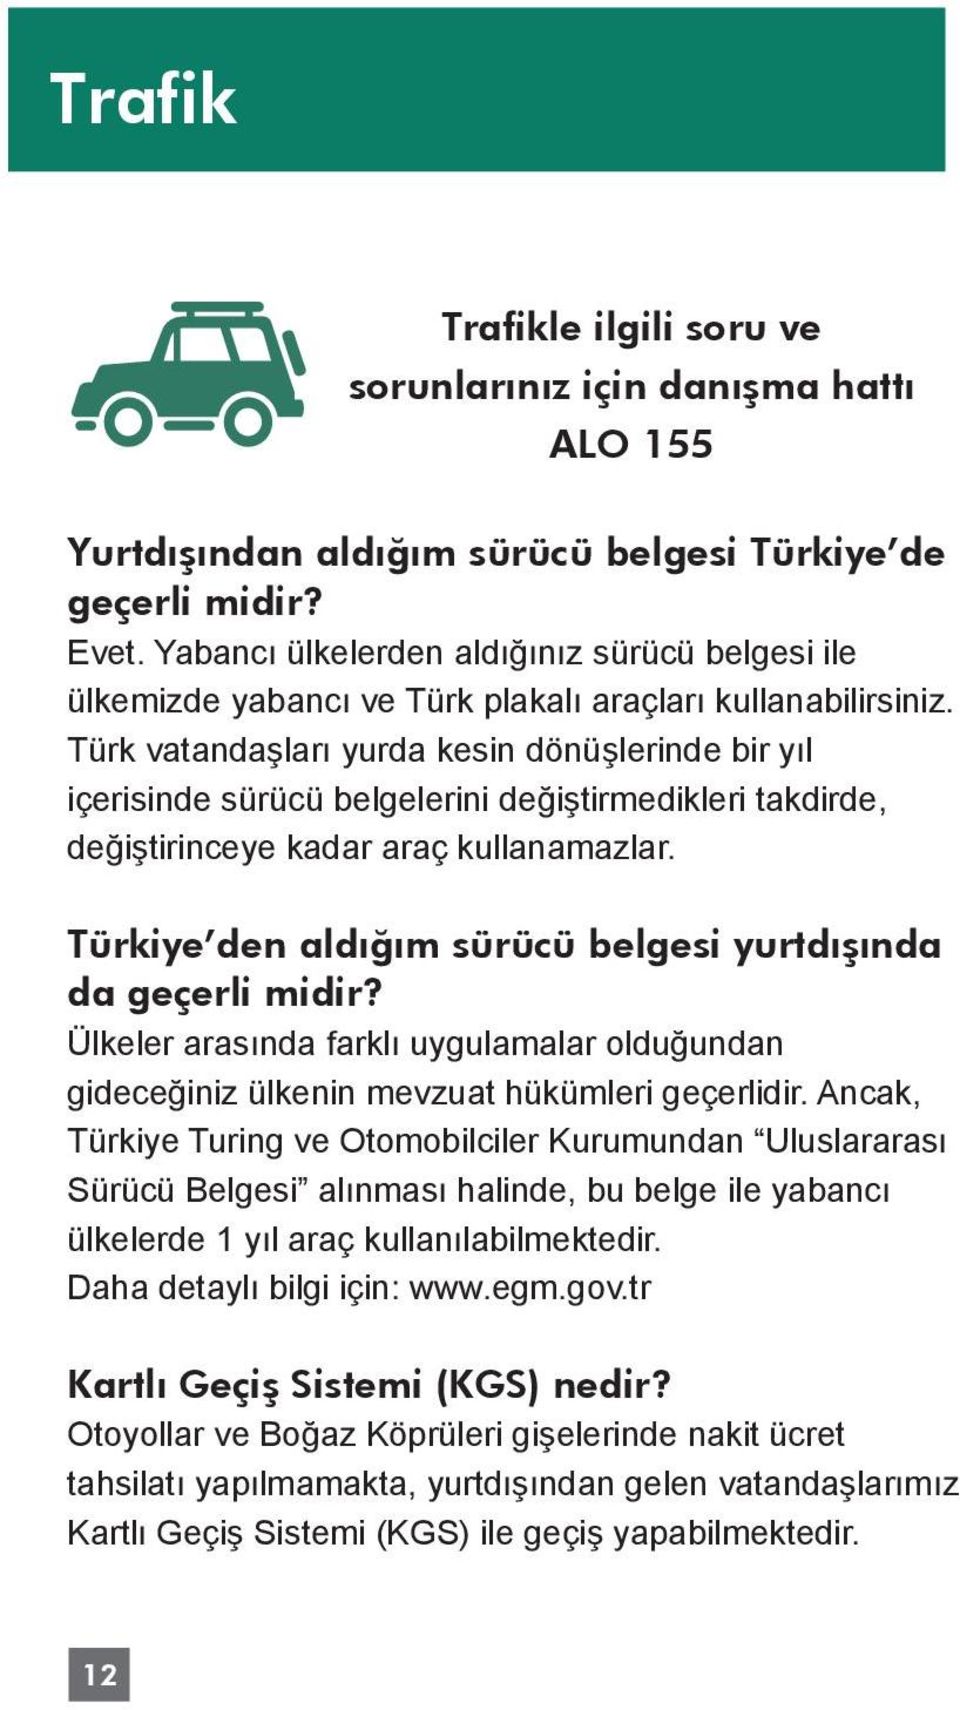 Türk vatandaşları yurda kesin dönüşlerinde bir yıl içerisinde sürücü belgelerini değiştirmedikleri takdirde, değiştirinceye kadar araç kullanamazlar.